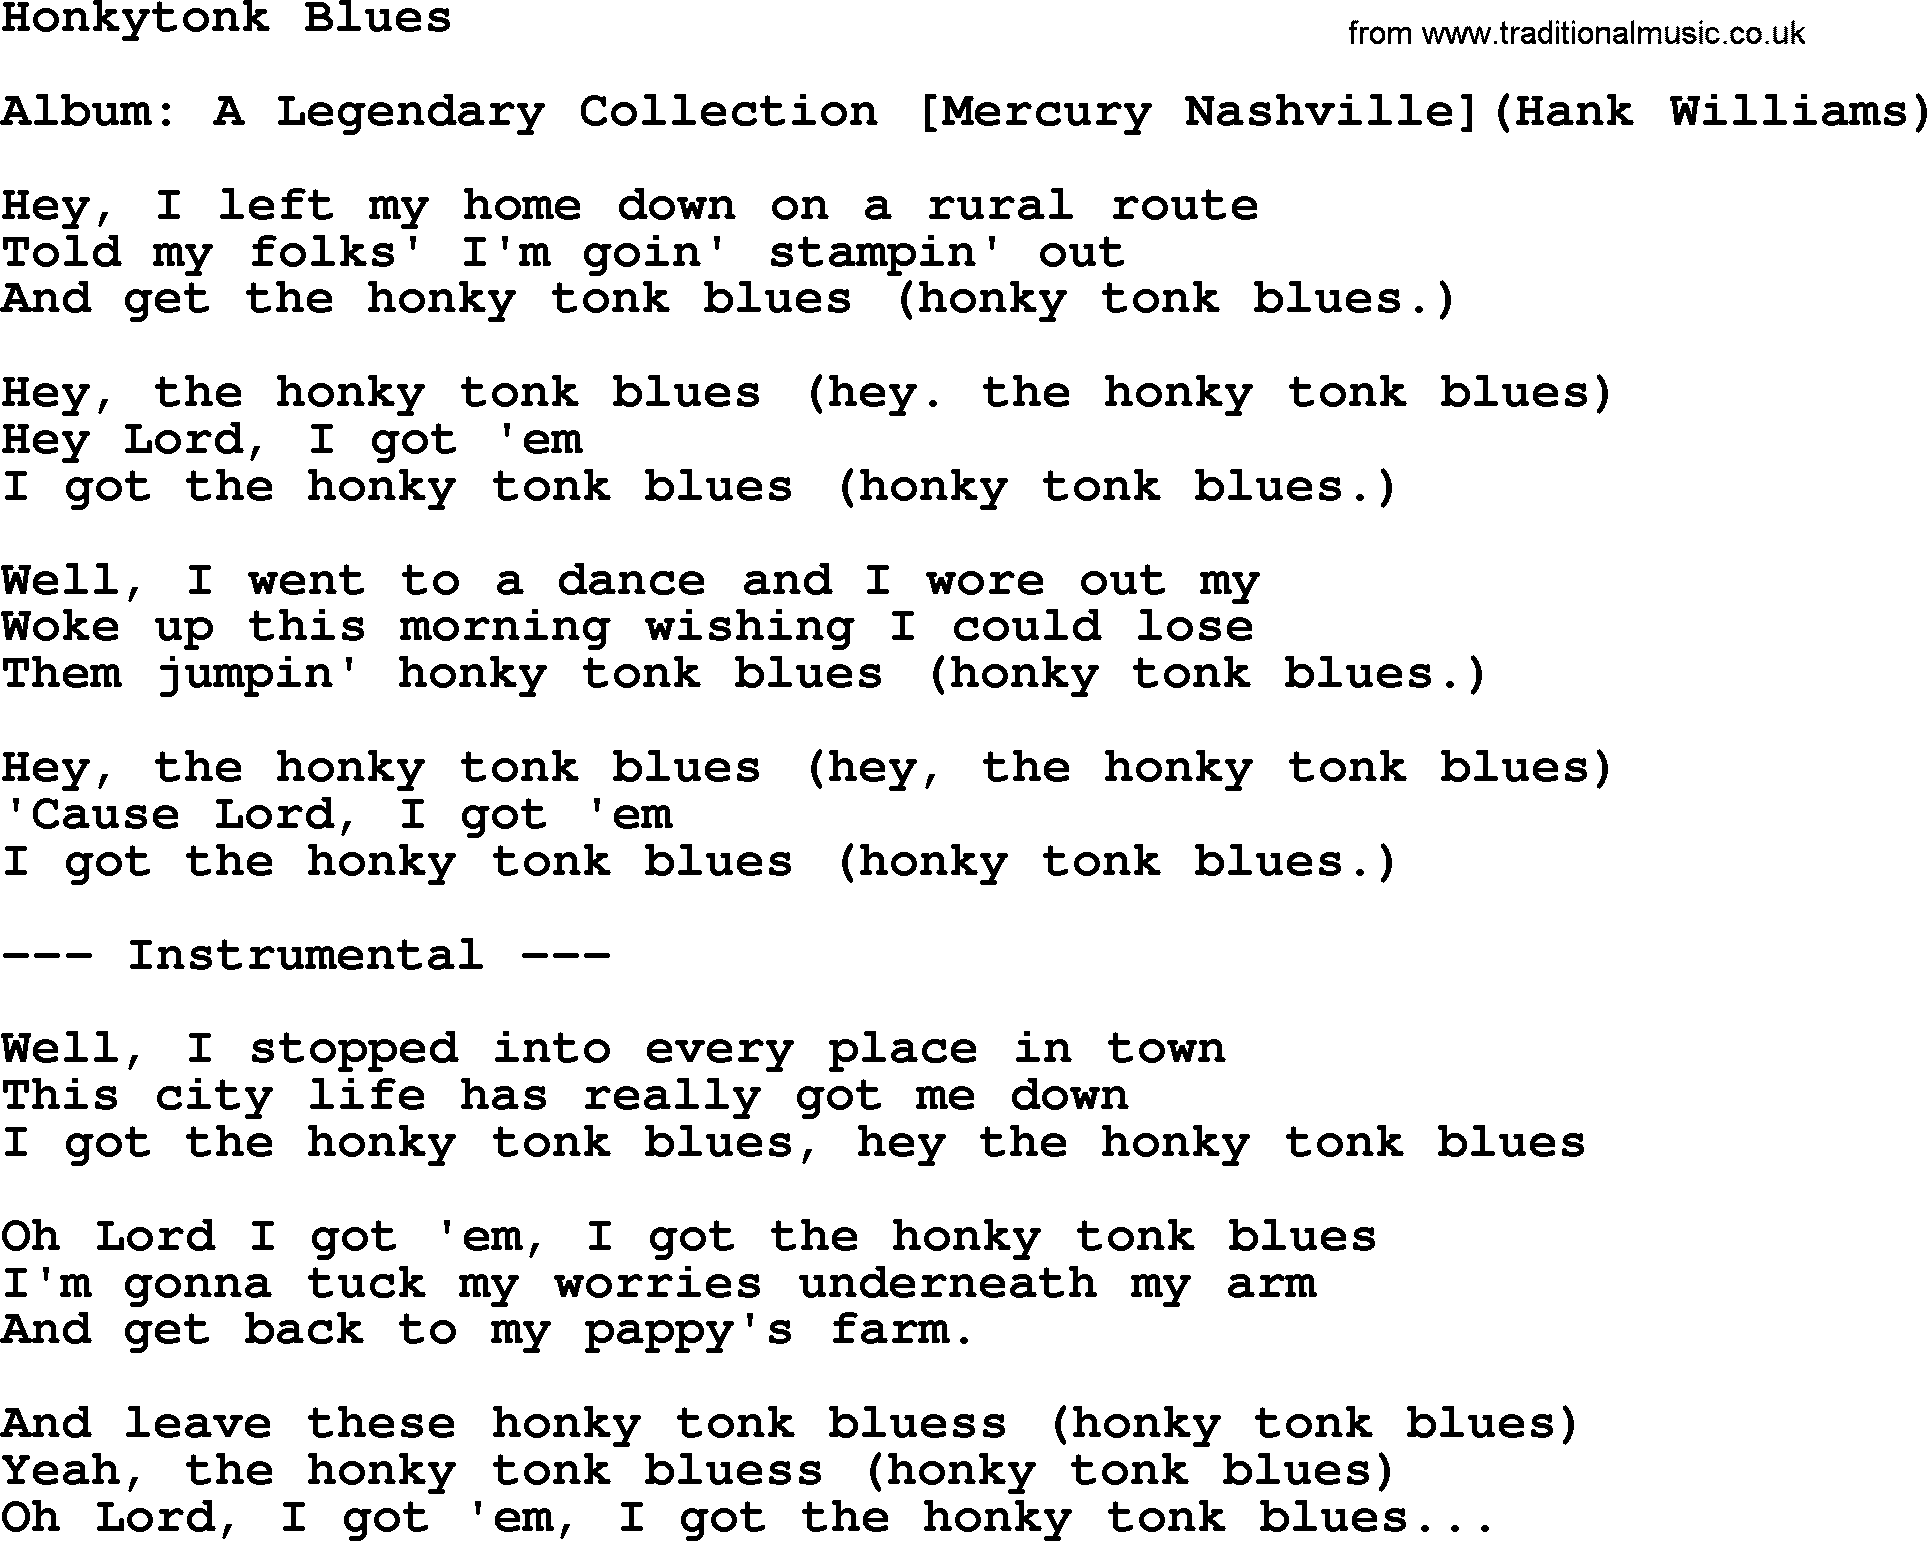 Hank Williams song Honkytonk Blues, lyrics